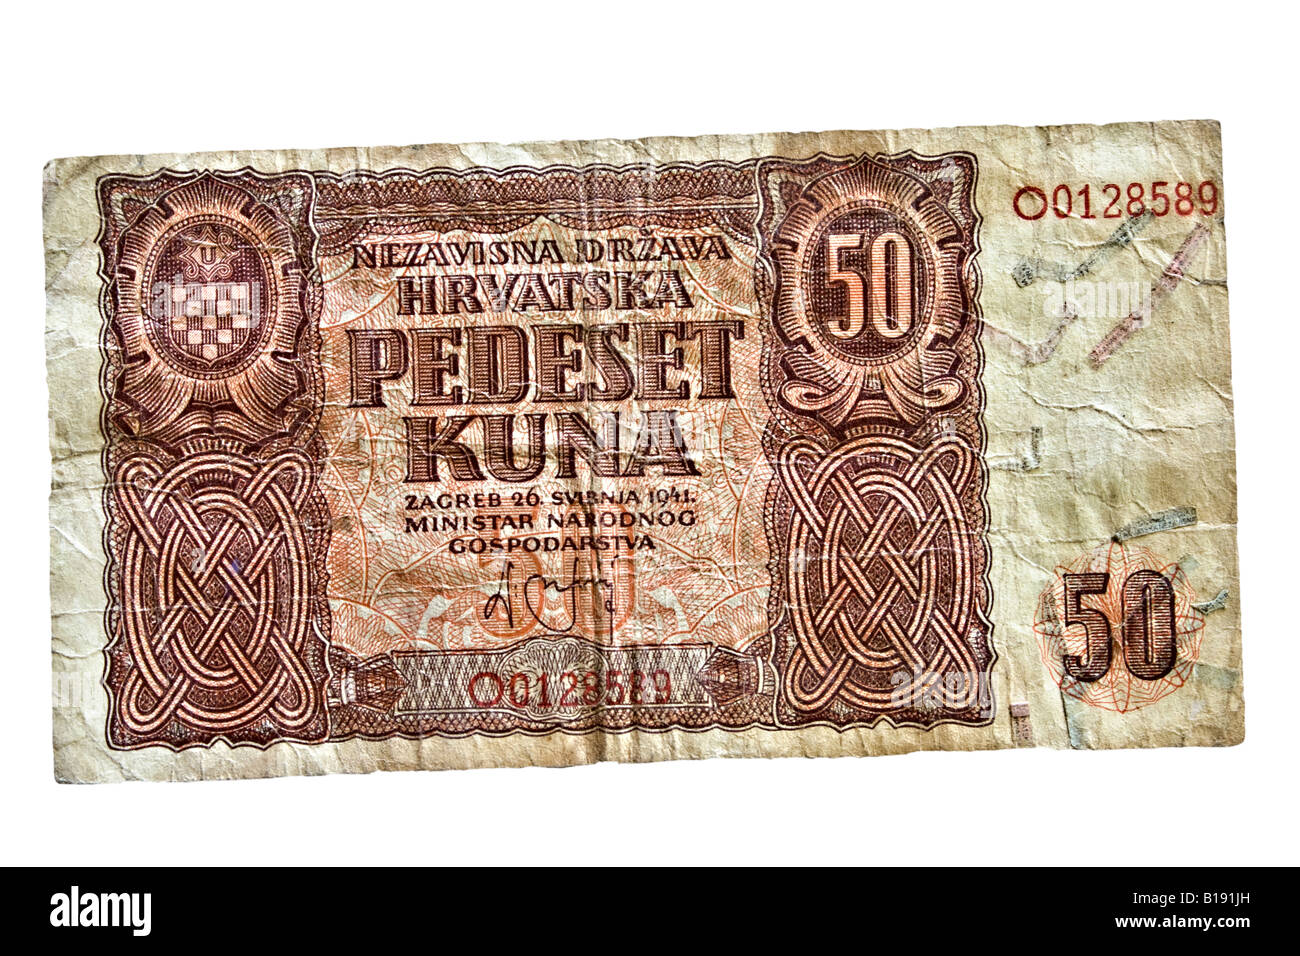 50 kuna croata billete desde el año 1941 Foto de stock